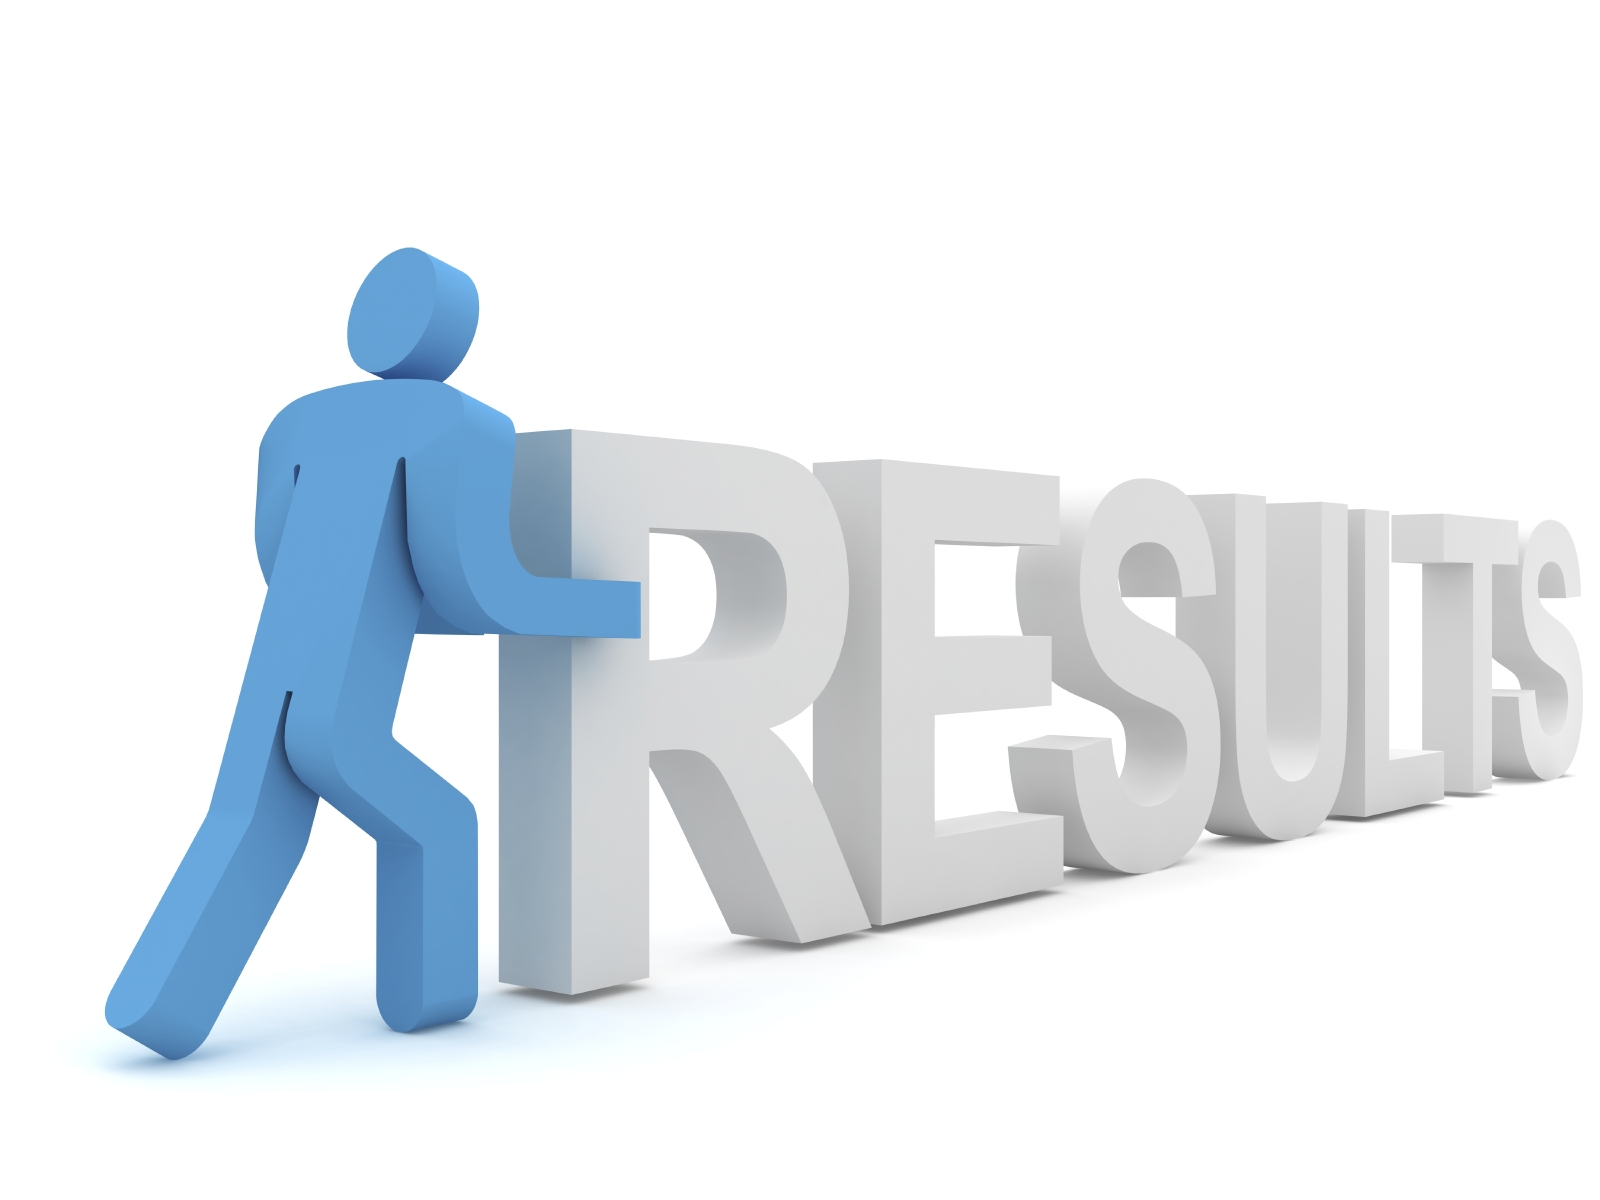 UJVNL AE Results 2016 announced for Posts of Assistant Engineer Civil & E&M @ www.uttarakhandjalvidyut.com